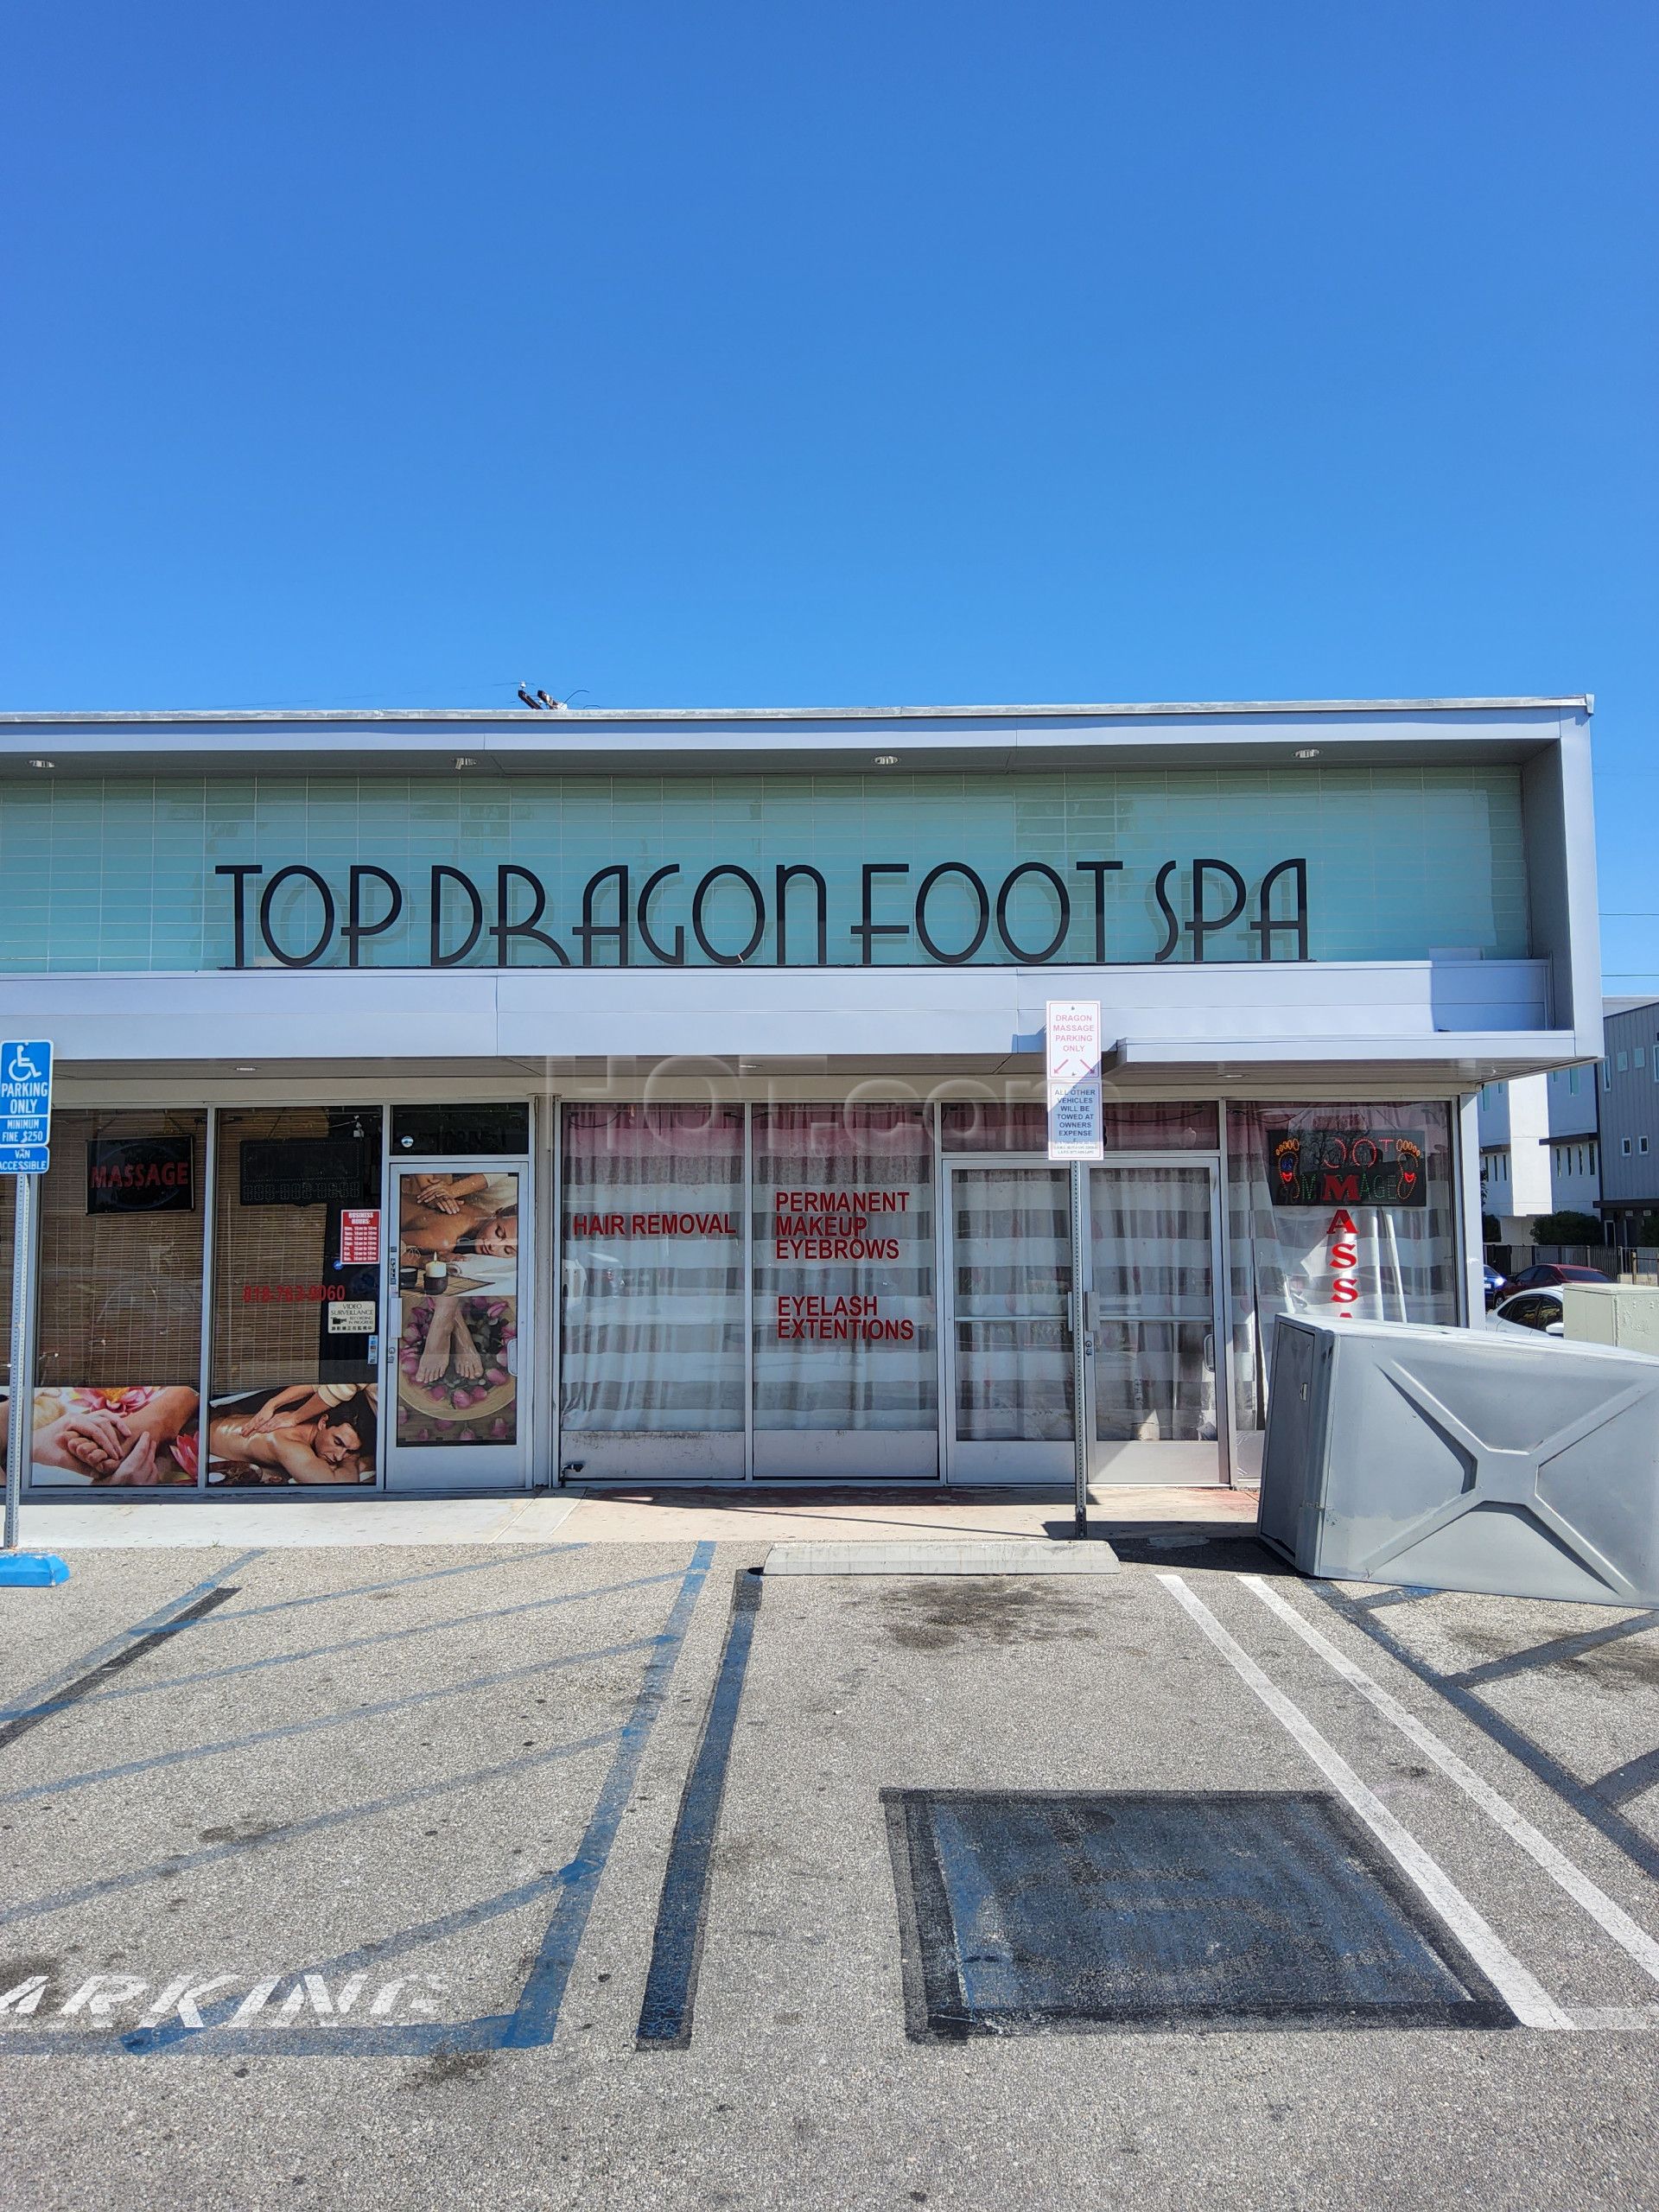 North Hollywood, California Top Dragon Foot Spa